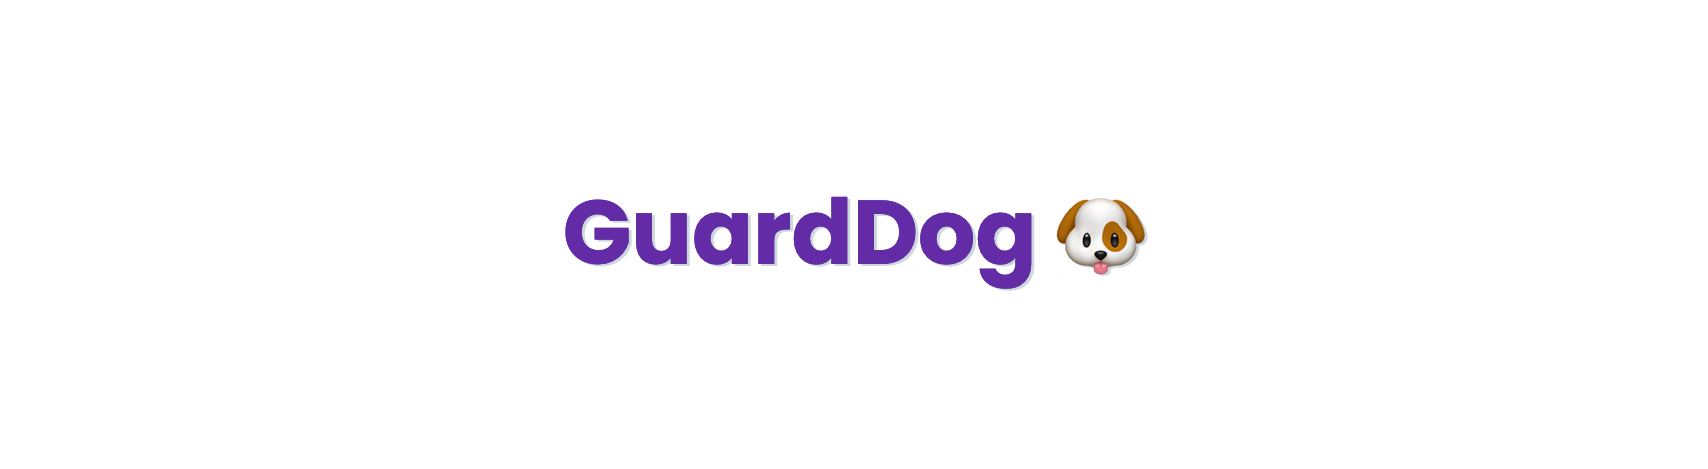 GuardDog Banner